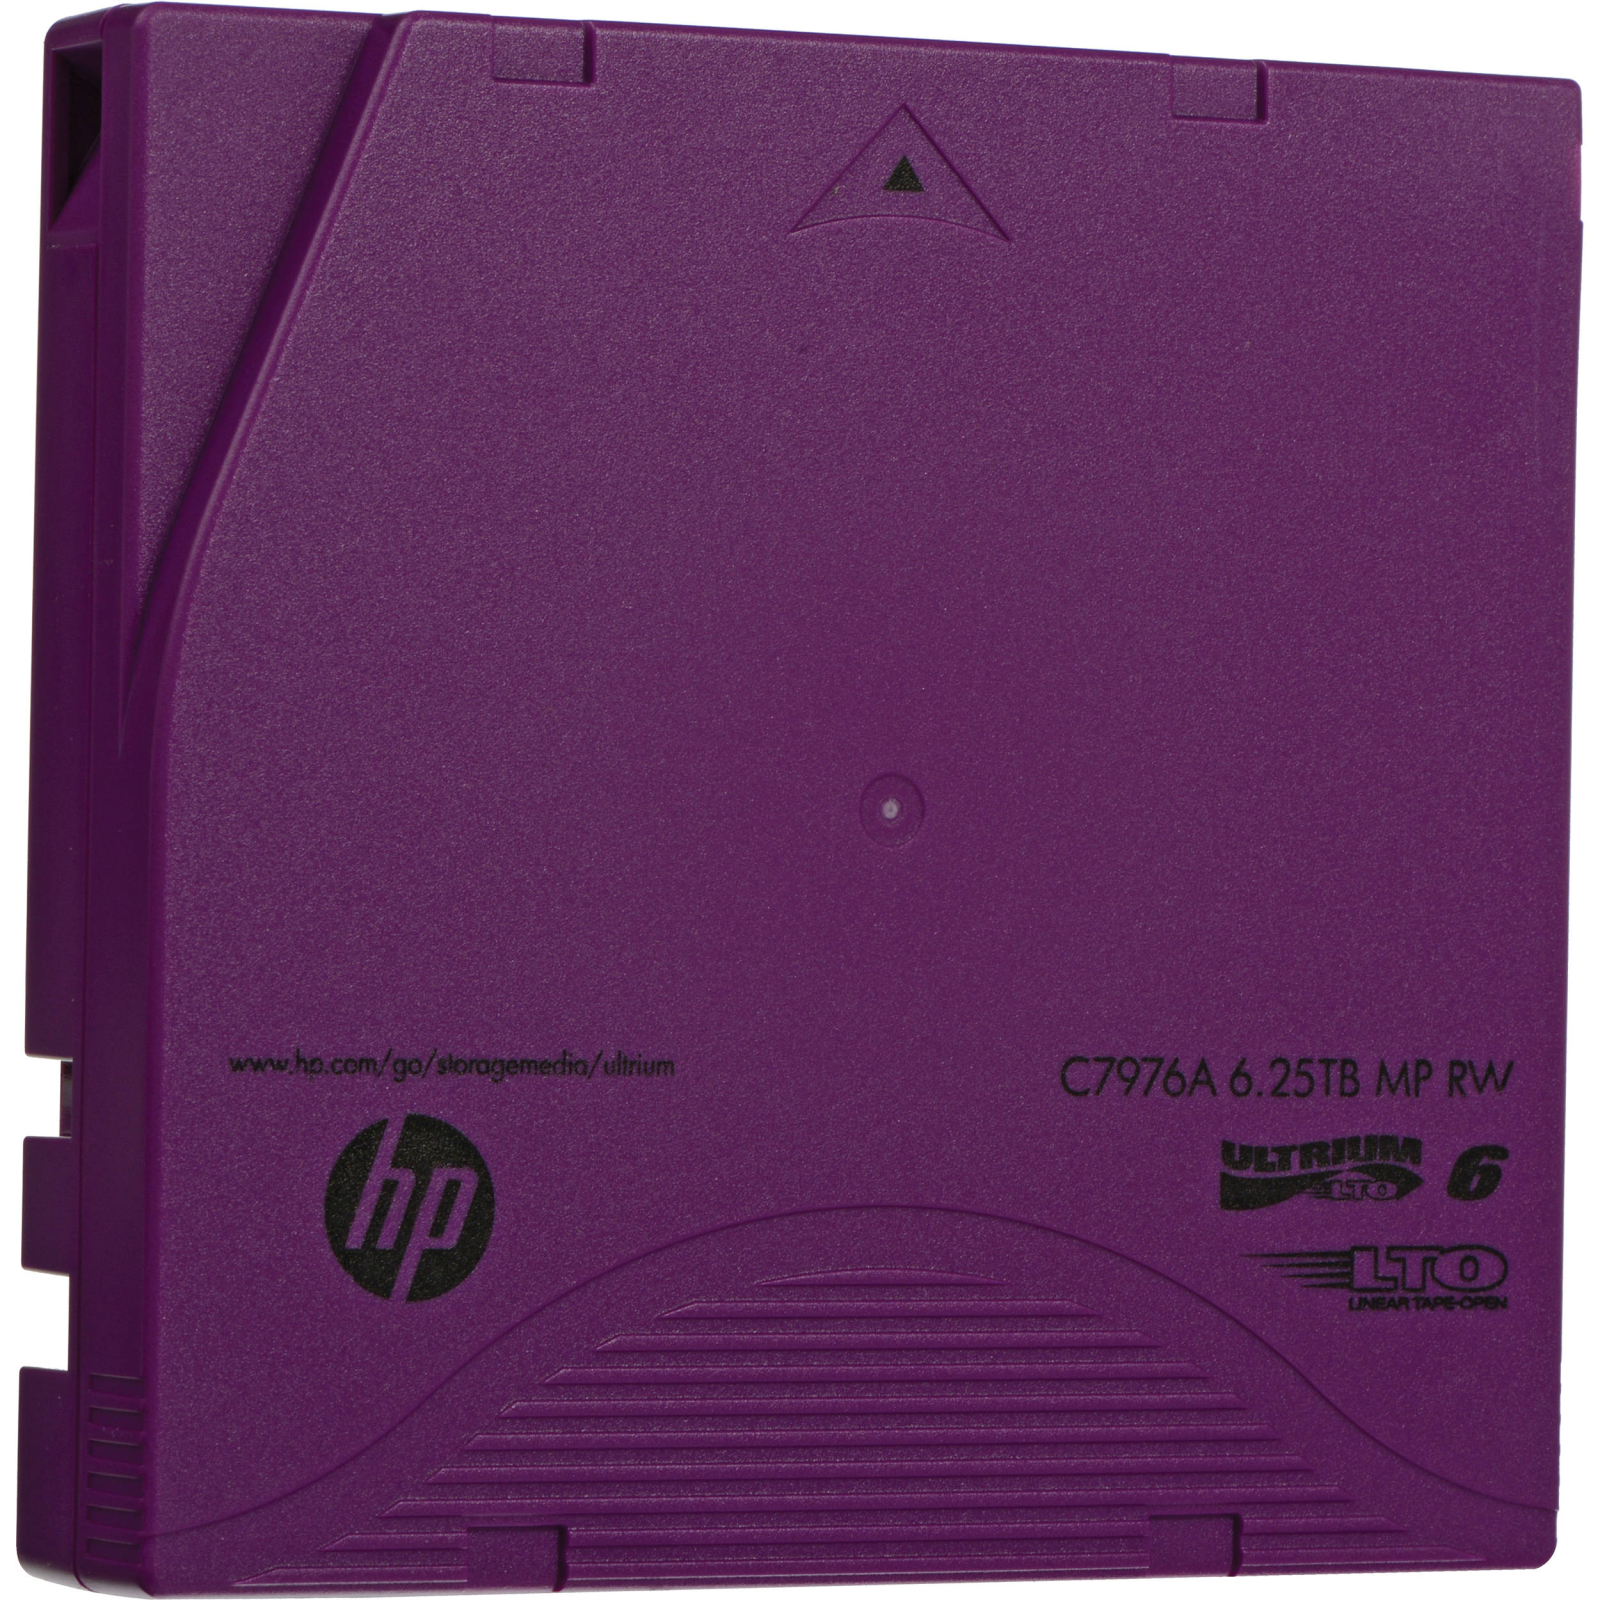 Дата-картридж HP LTO-6 Ultrium 6.25TB MP RW Data Cartridge (C7976A) изображение 2